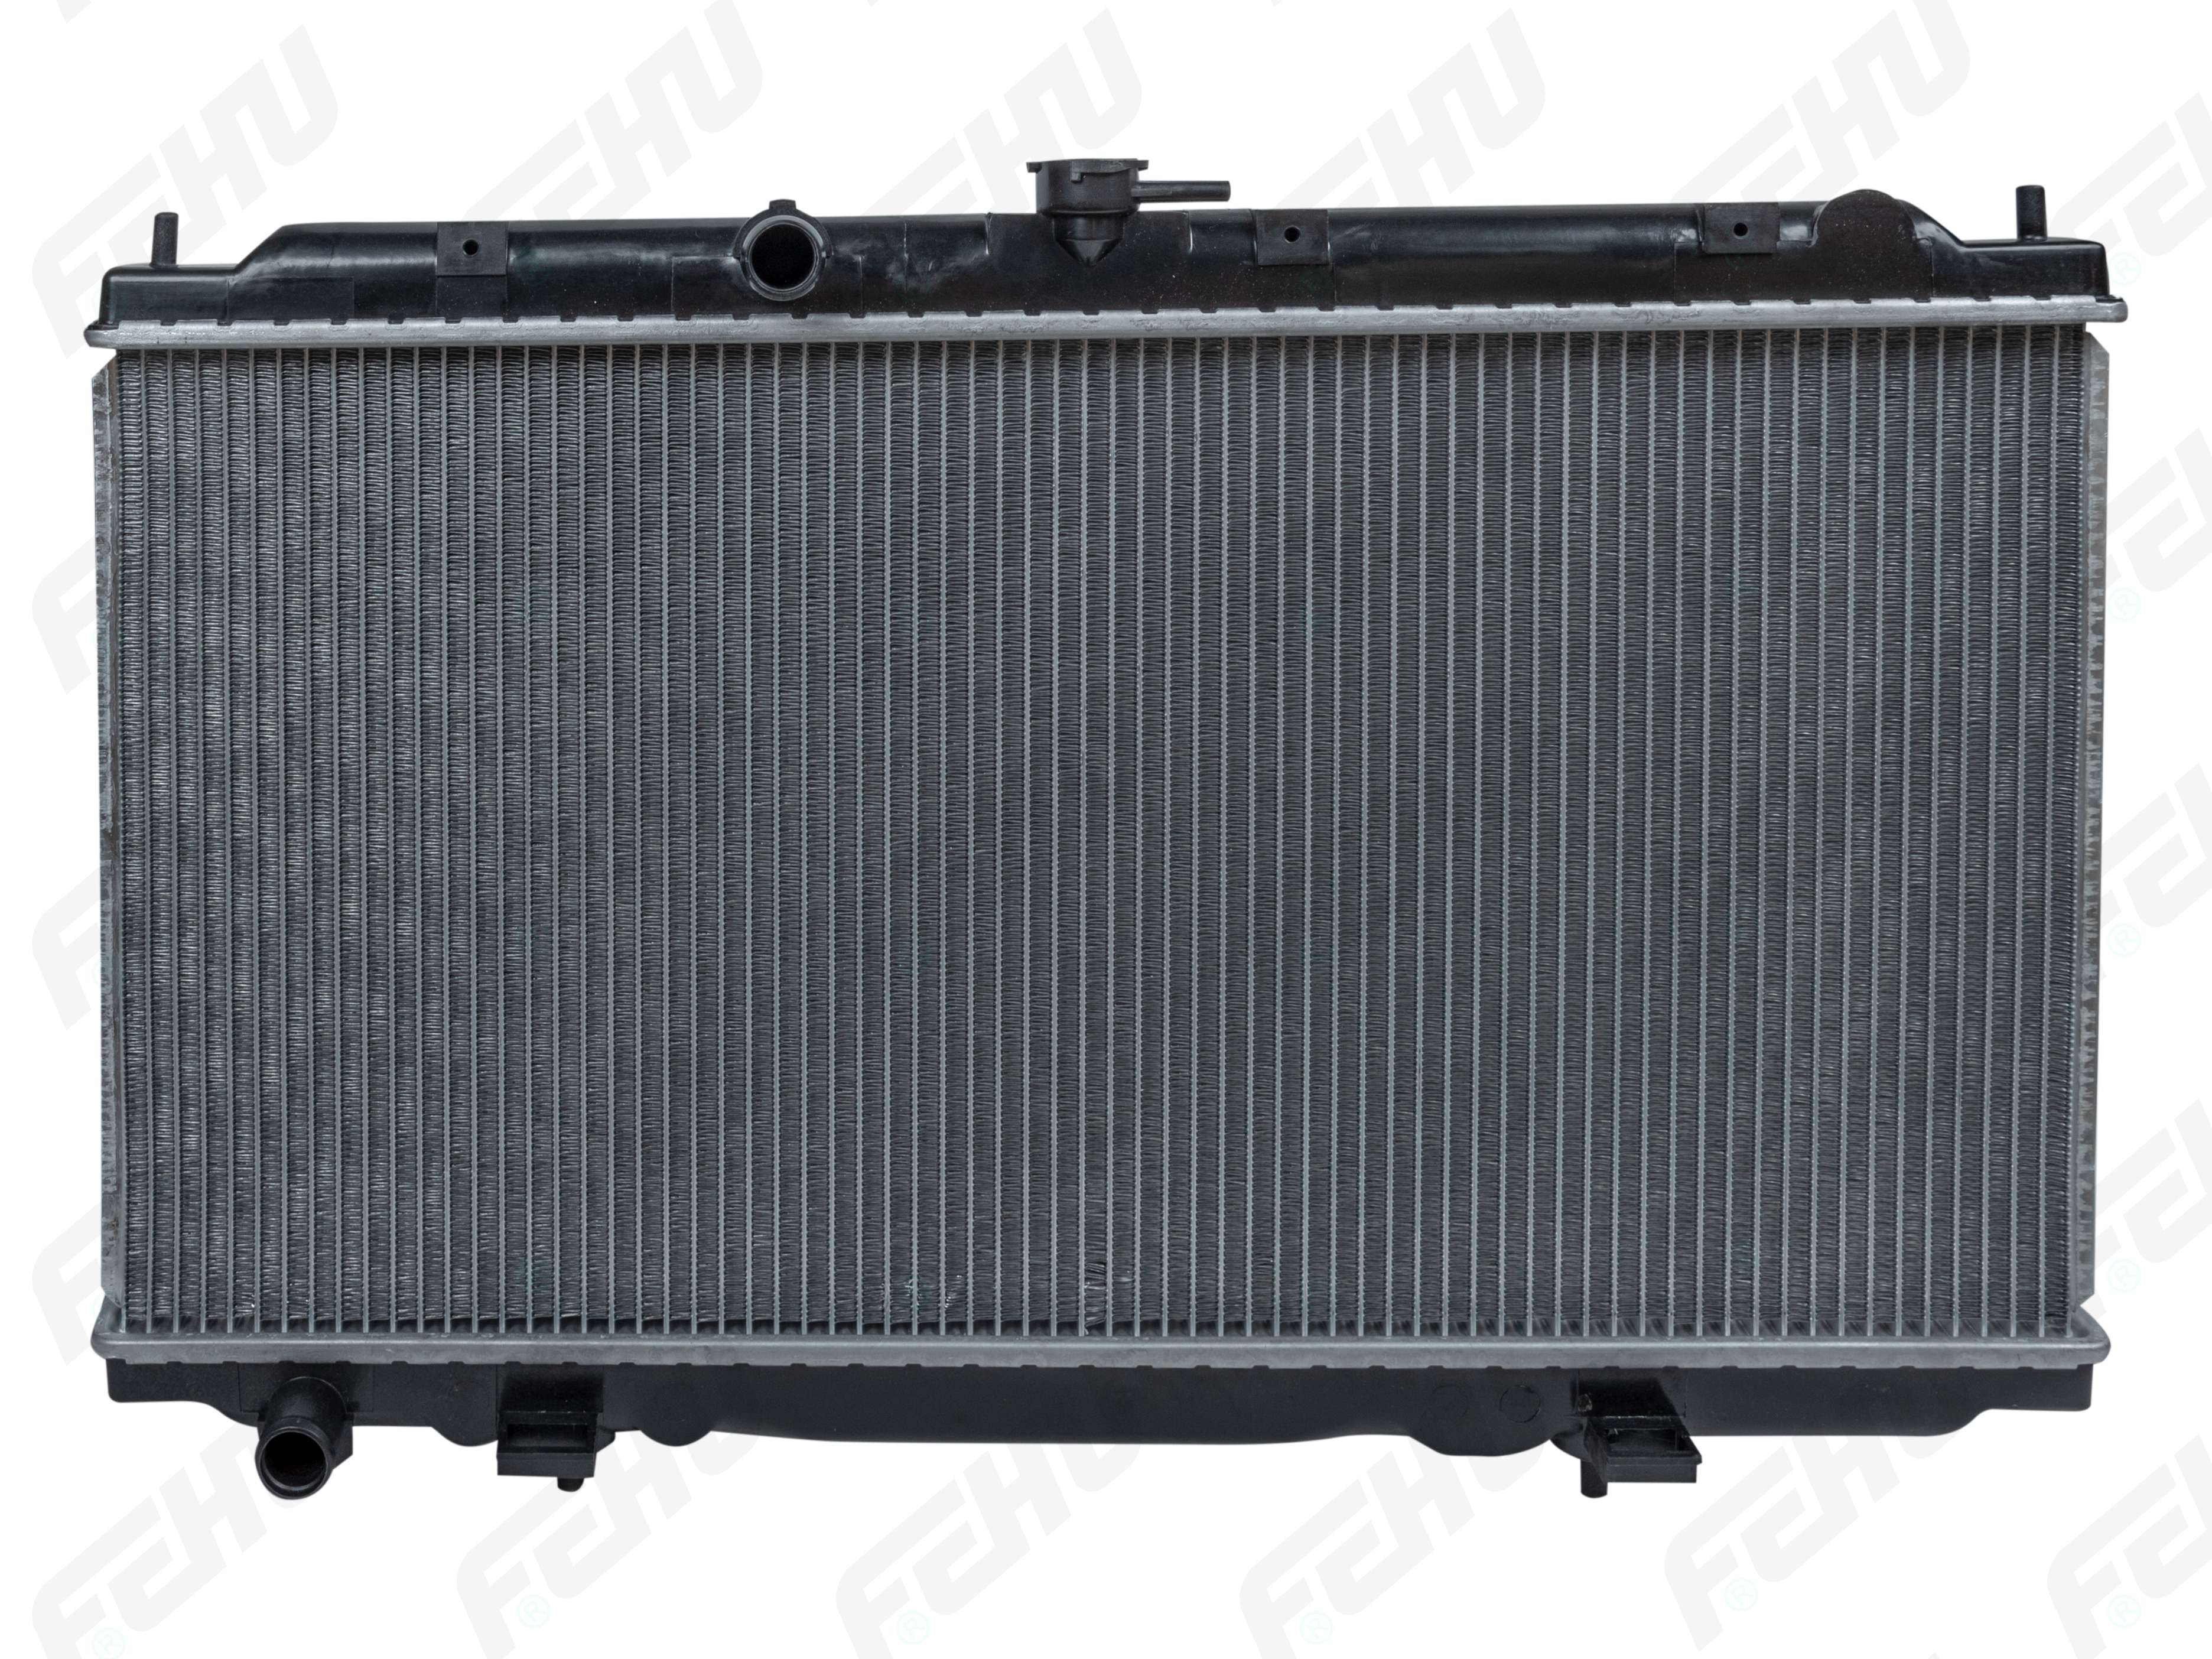 FEHU FRC1005 Радиатор охлаждения Nissan Almera N16/Primera P12 (00-) MT